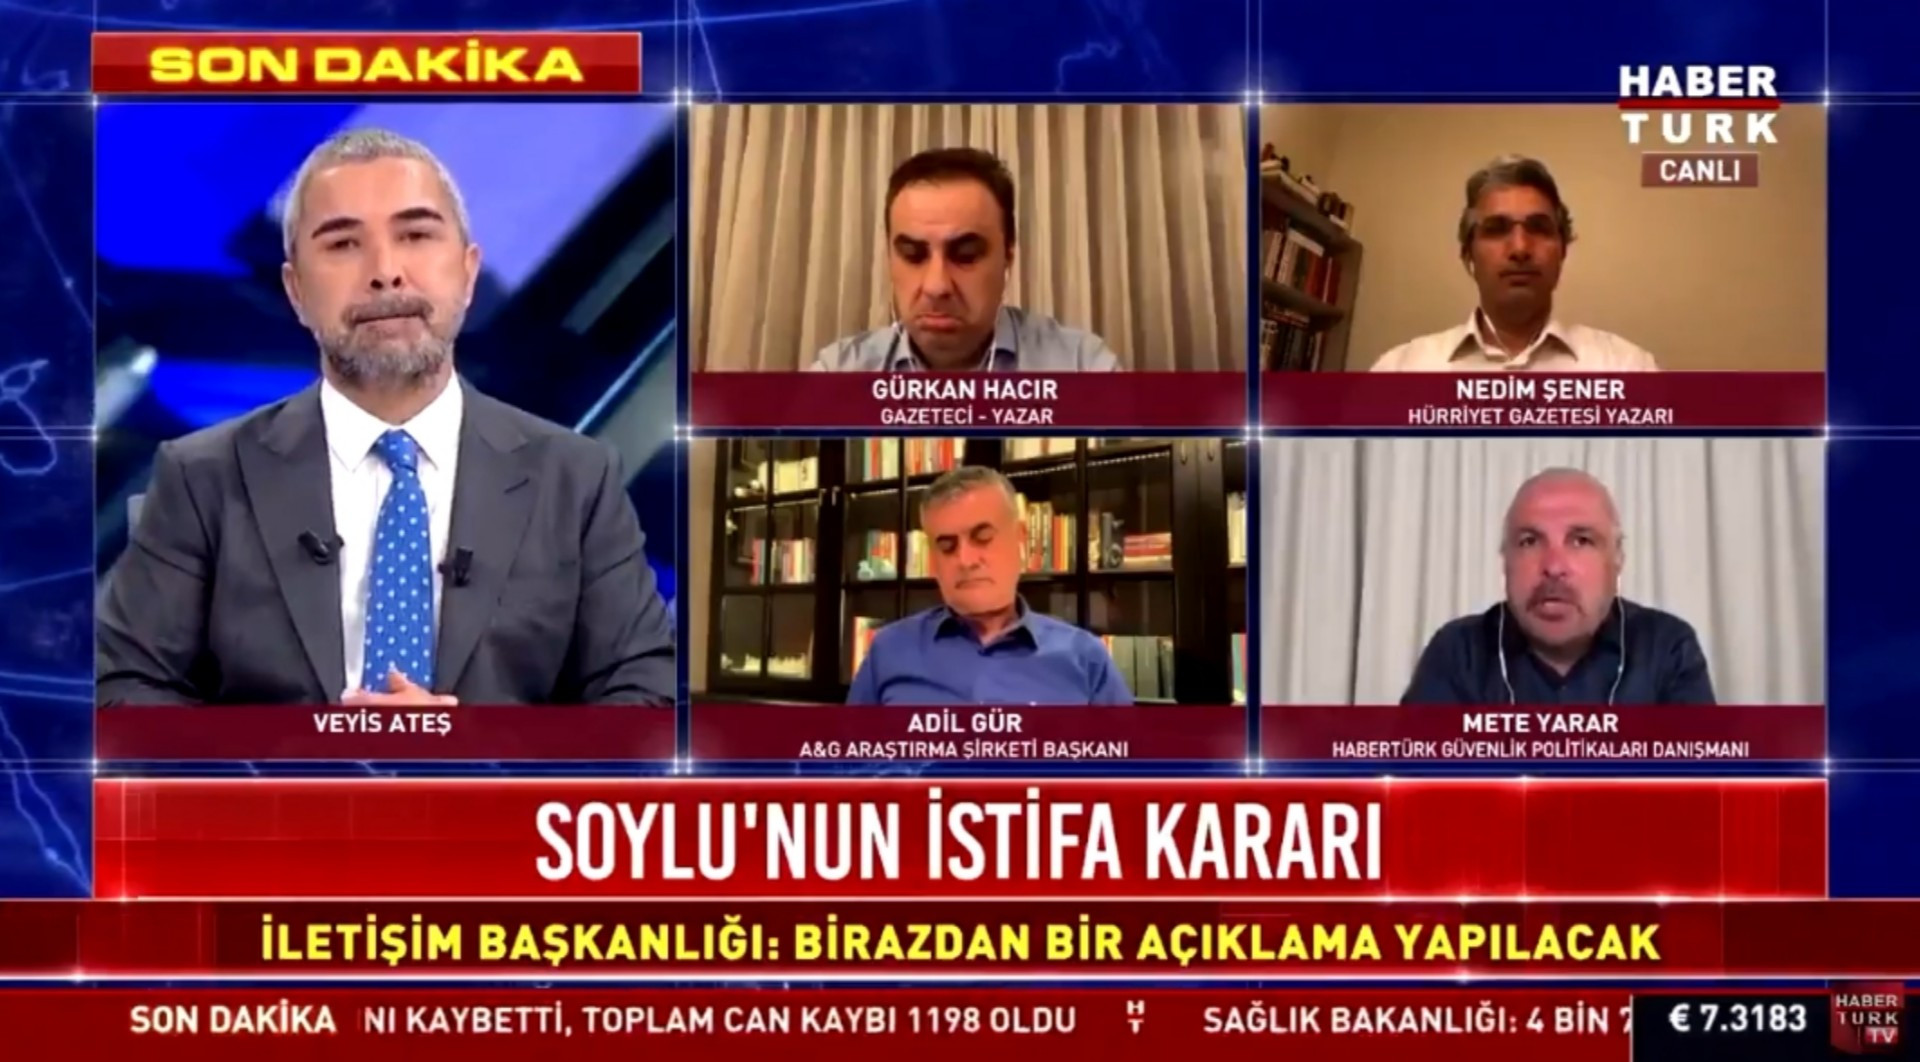 Habertürk TV'de canlı yayında yellenen kişi belli oldu iddiası - Resim: 1